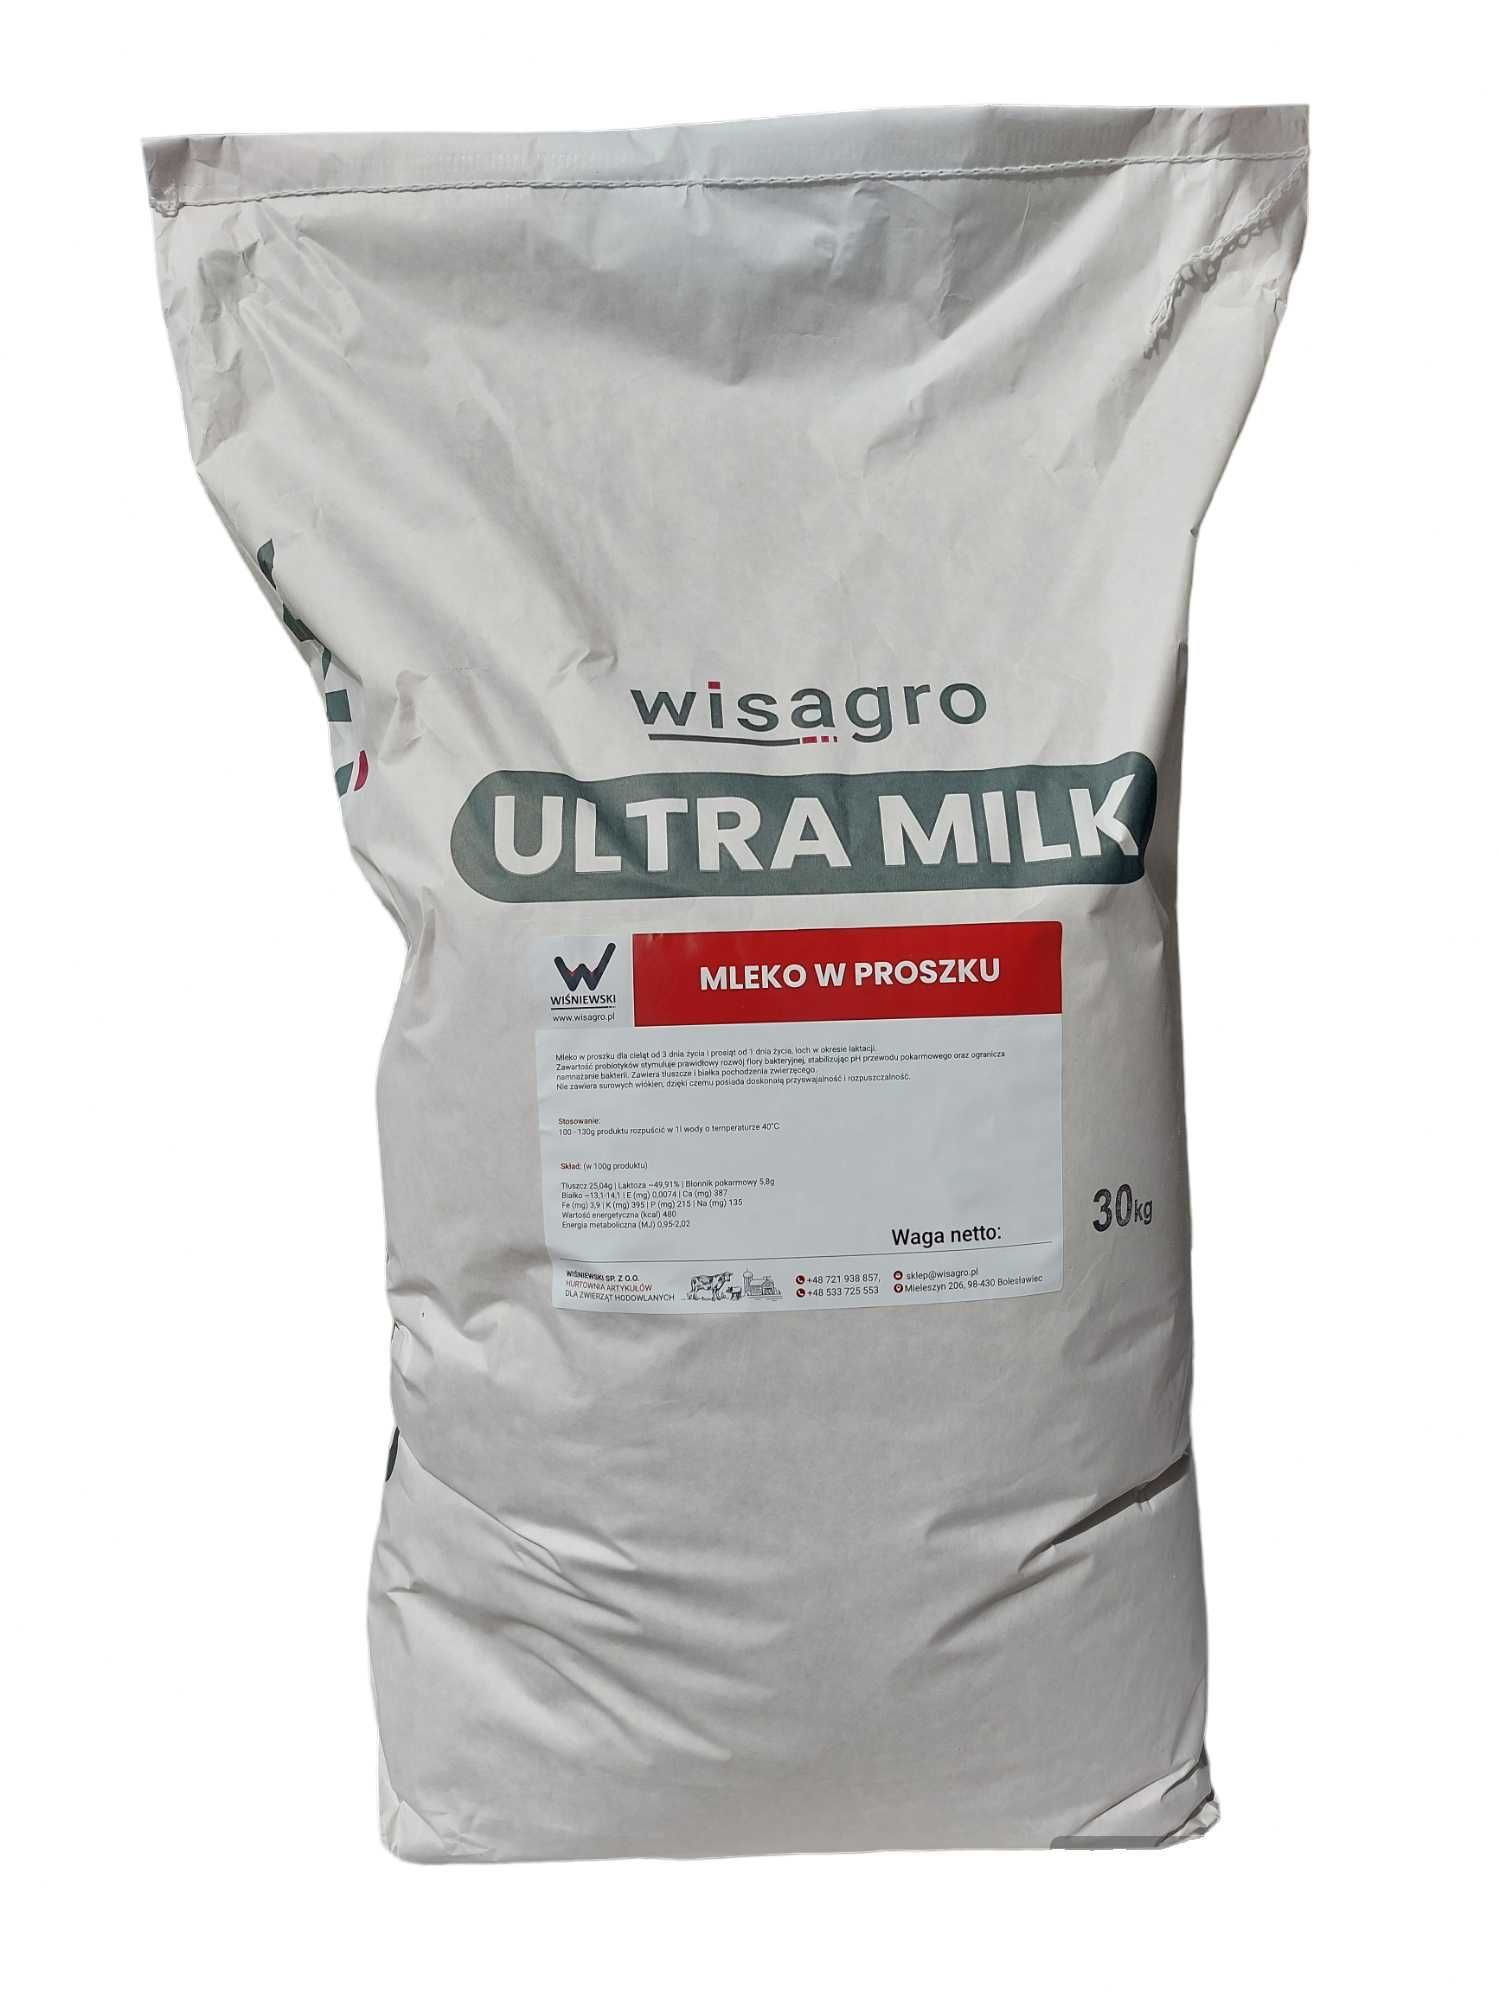 Mleko w proszku dla cieląt wisagro ultra milk paleta 990kg